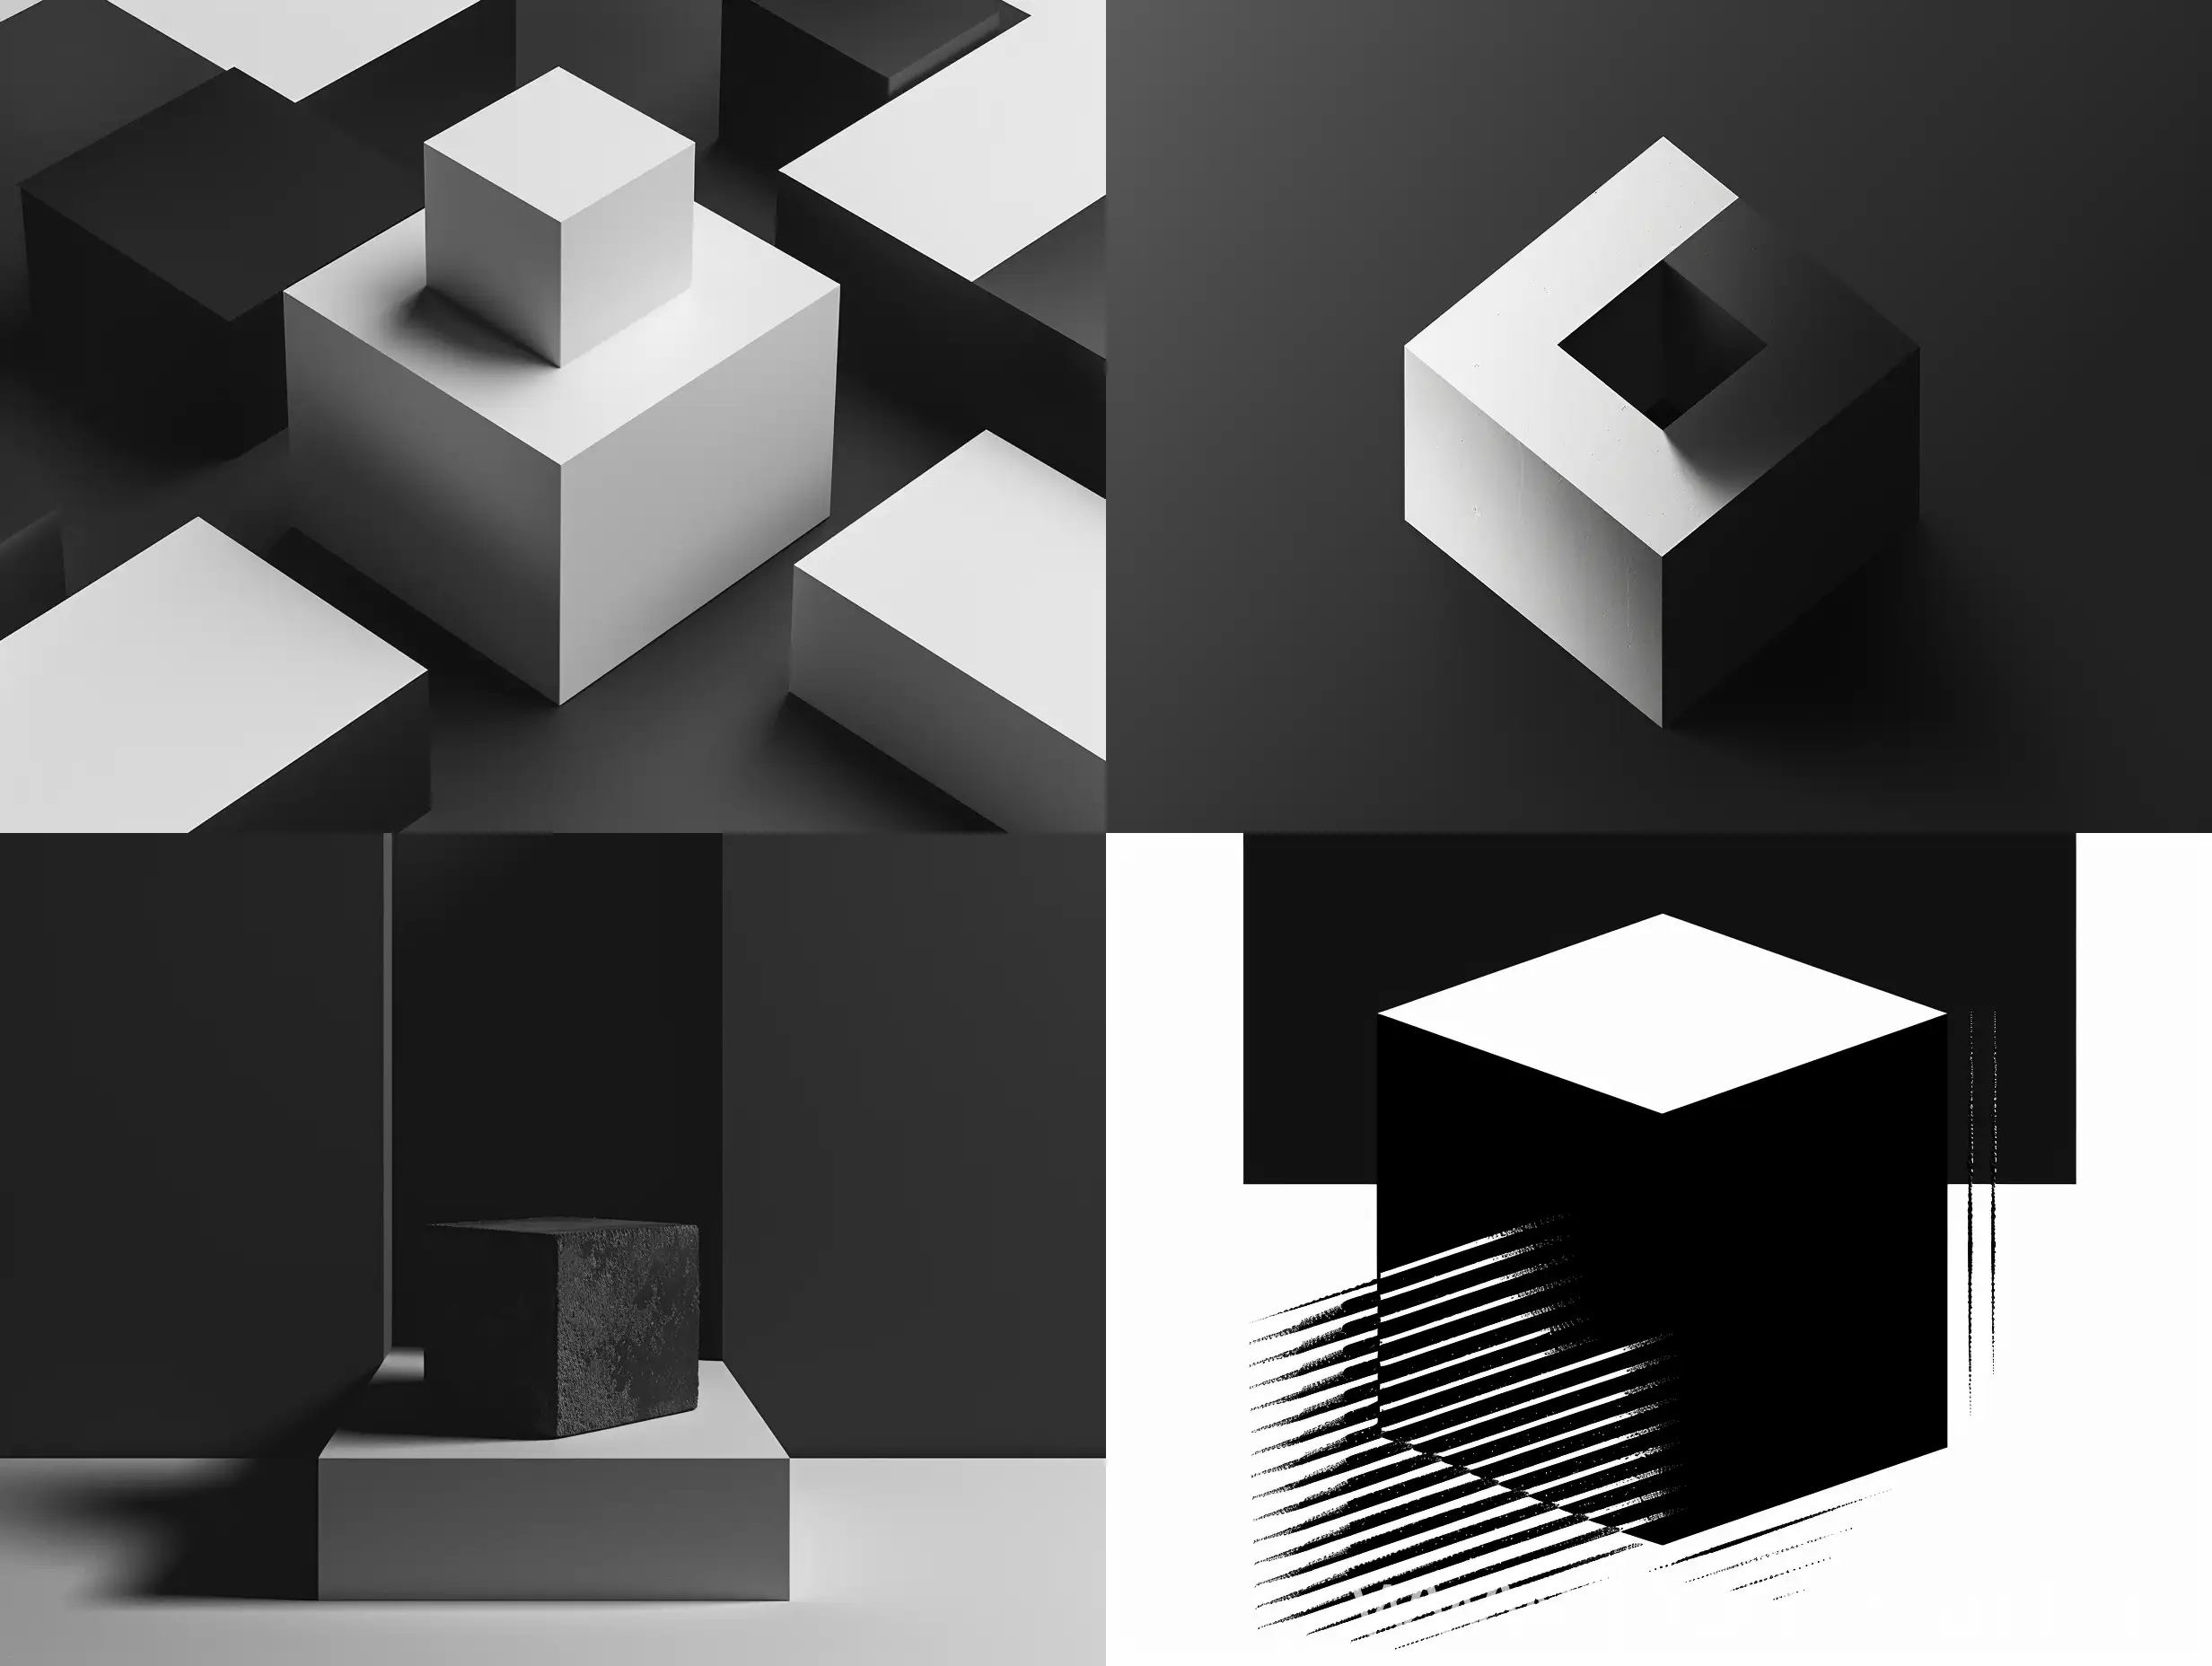 сделай черно-белое изображение в стиле минимализма и графики: плоскостная композиция отображающая куб
